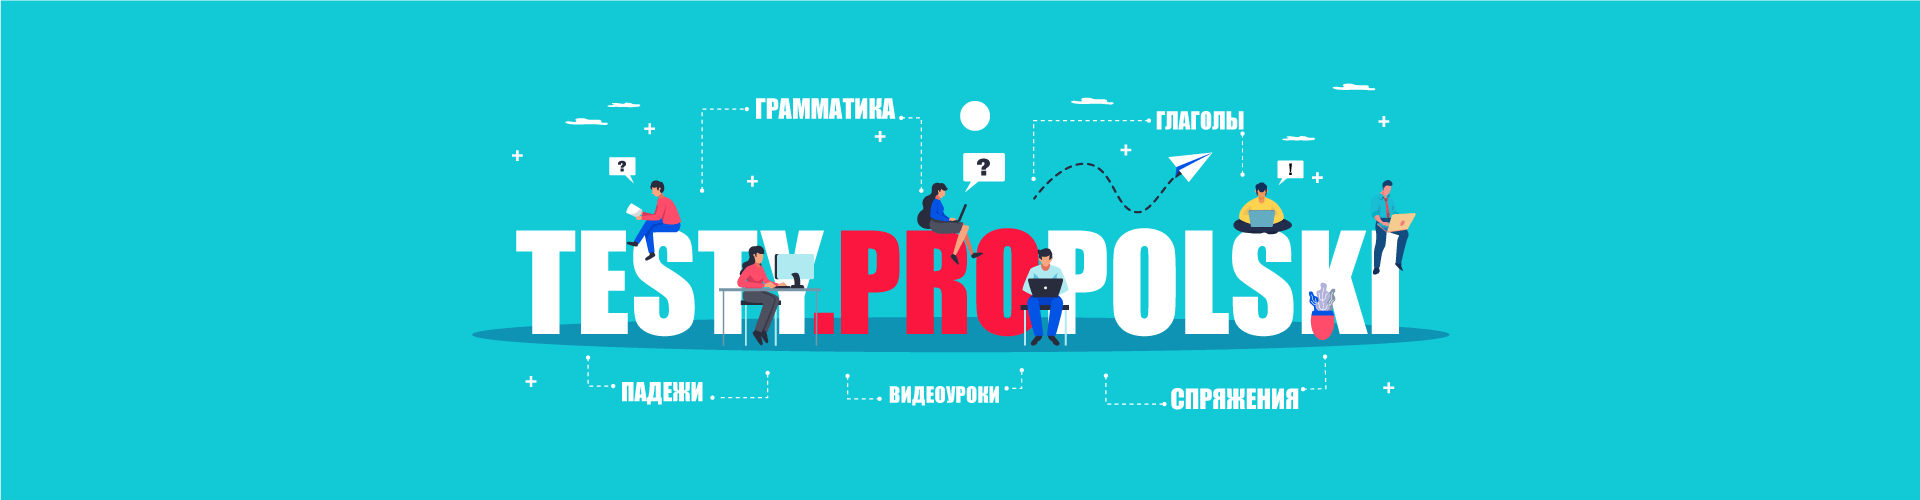 Testy.ProPolski - тесты по польскому языку онлайн